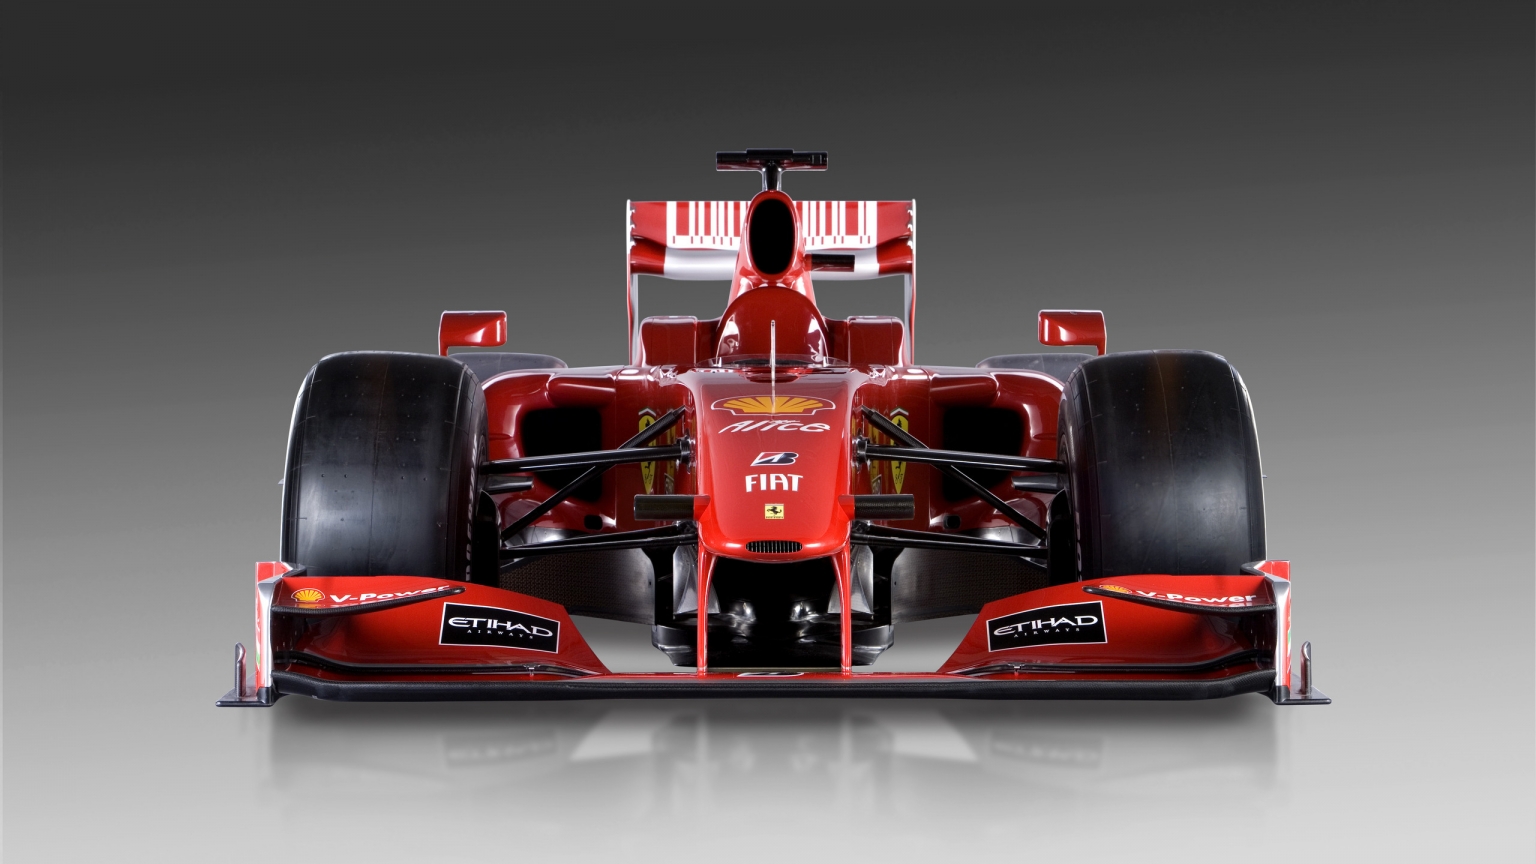 Ferrari Formula 1 for 1536 x 864 HDTV resolution